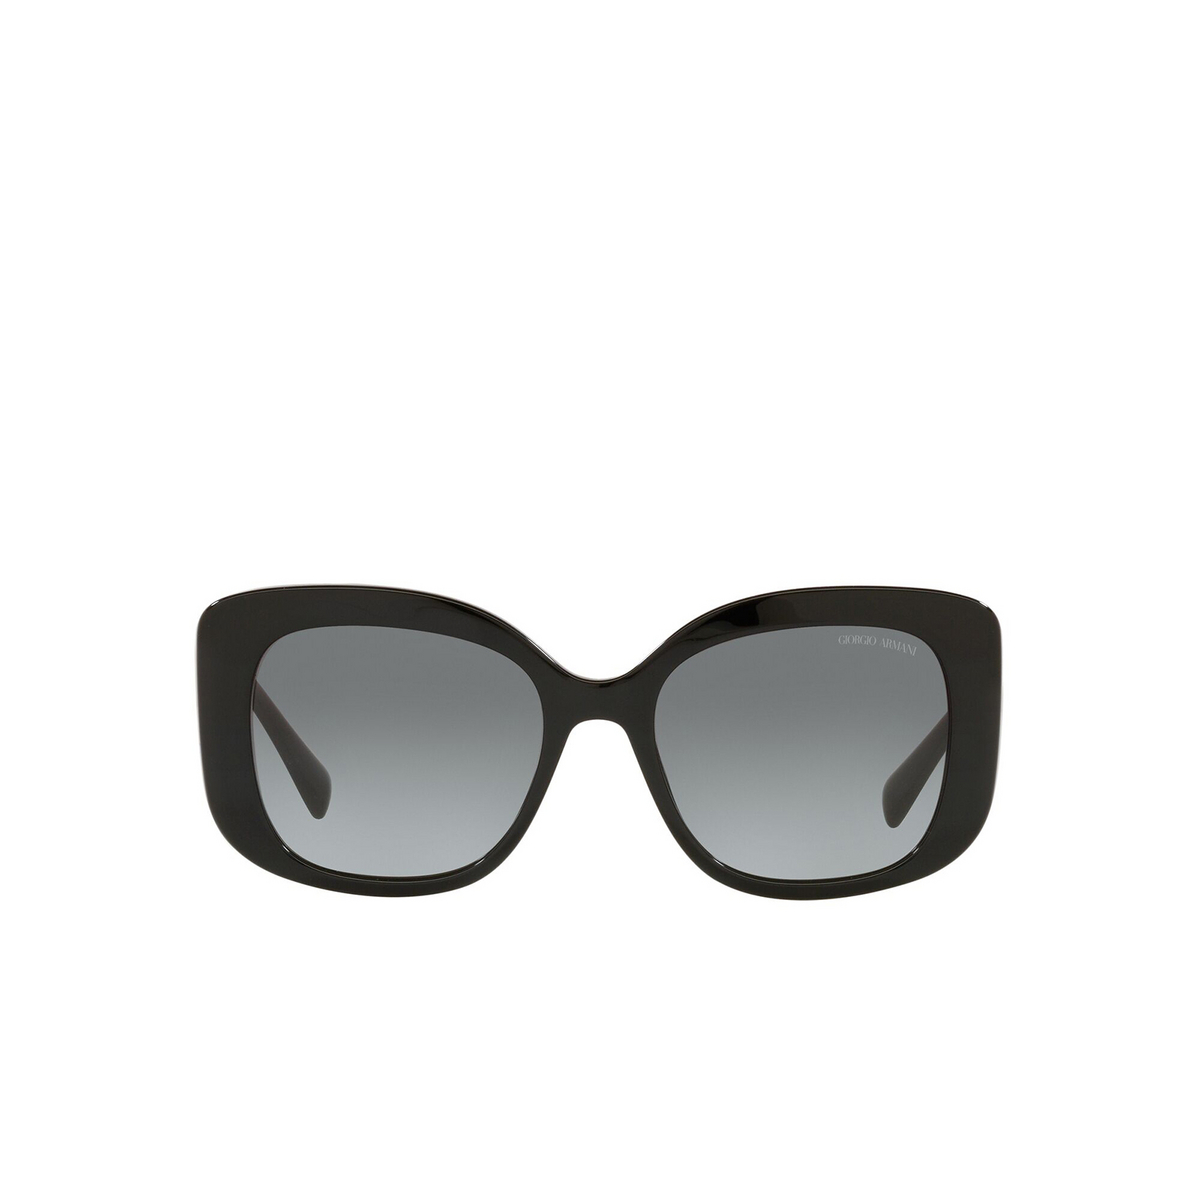 Giorgio Armani® Square Sunglasses: AR8150 color Black 500111 - front view.